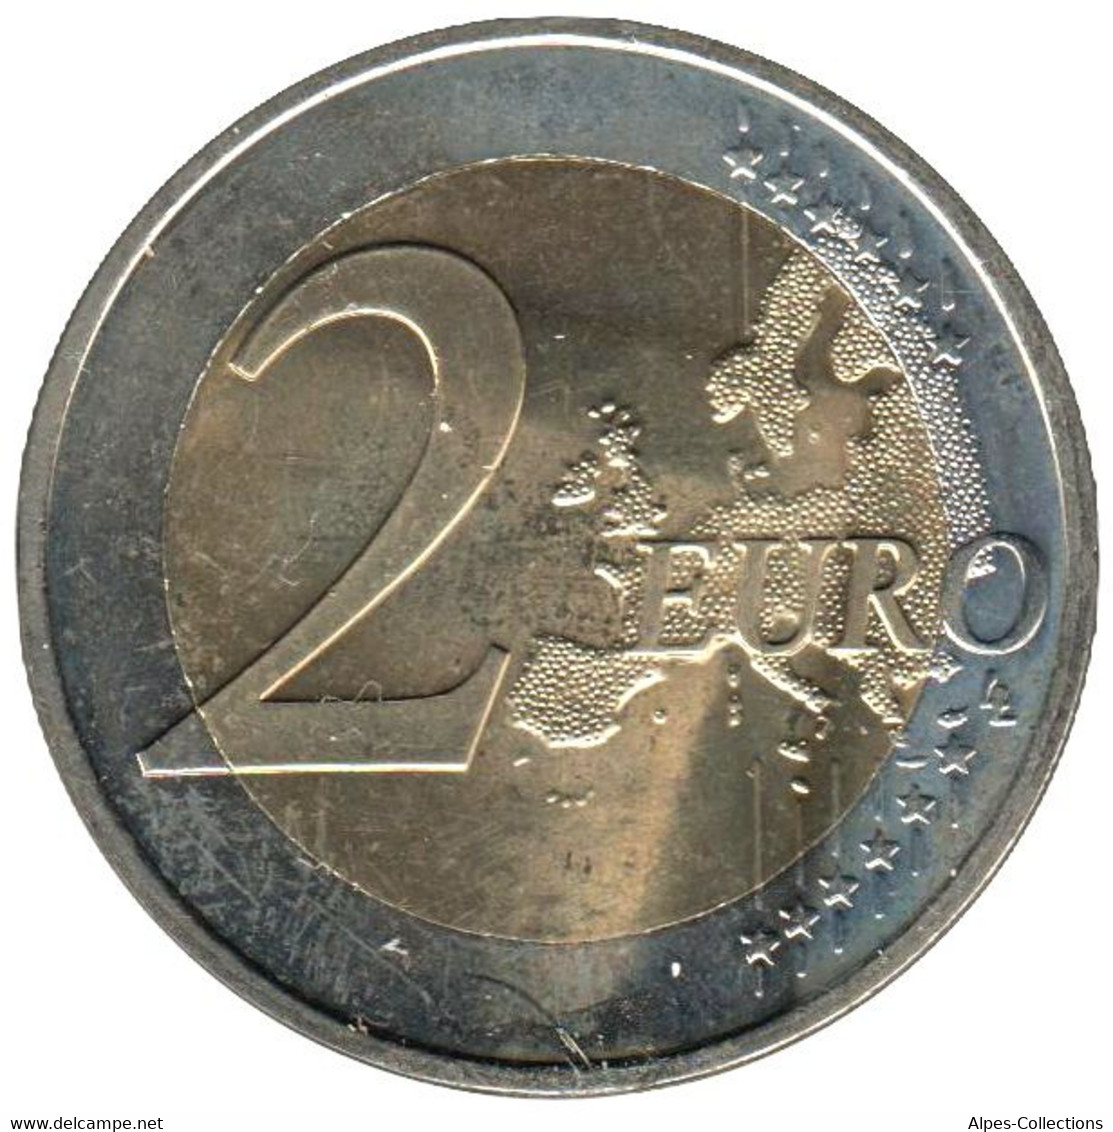 SQ20019.1 - SLOVAQUIE - 2 Euros Commémo. Milan Rastislav Stefanik - 2019 - Slowakije